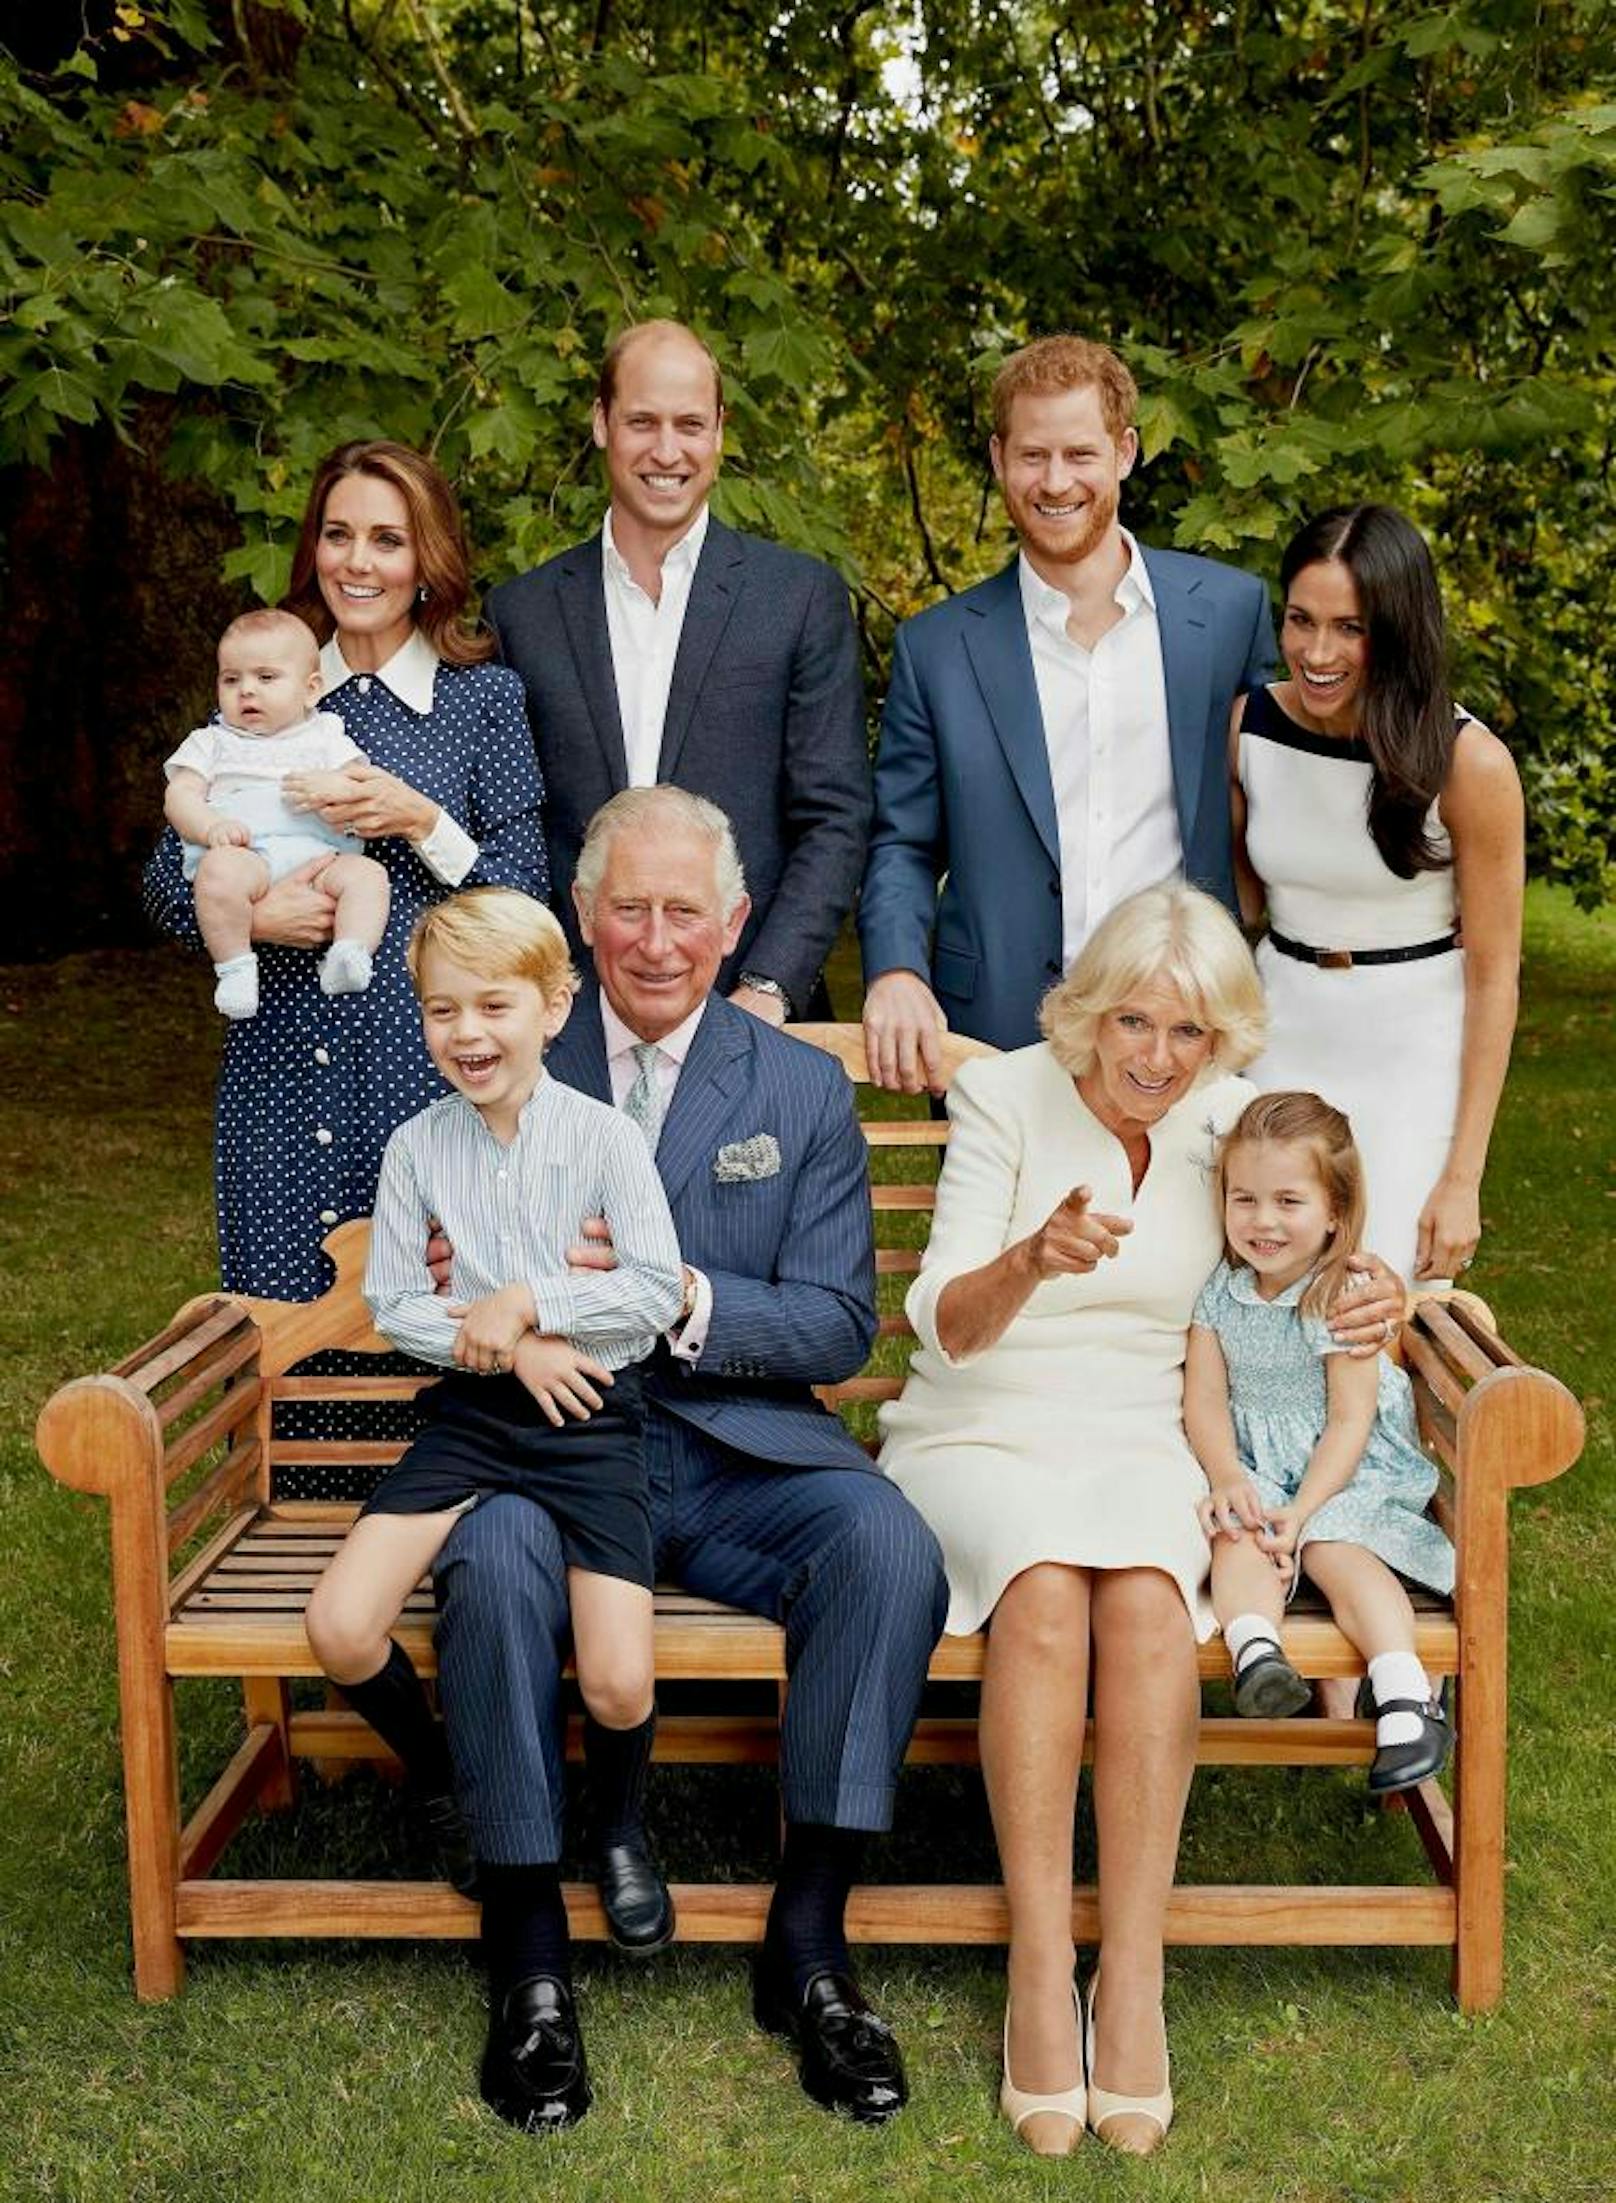 14.11.2018: Prinz Charles feiert heute seinen 70. Geburtstag. Zu diesem Anlass veröffentlichte der Königspalast ein neues Foto, das den britischen Thronfolger mit Prinz William, Kate, Prinz Harry, Meghan und seinen Enkelkindern zeigt.